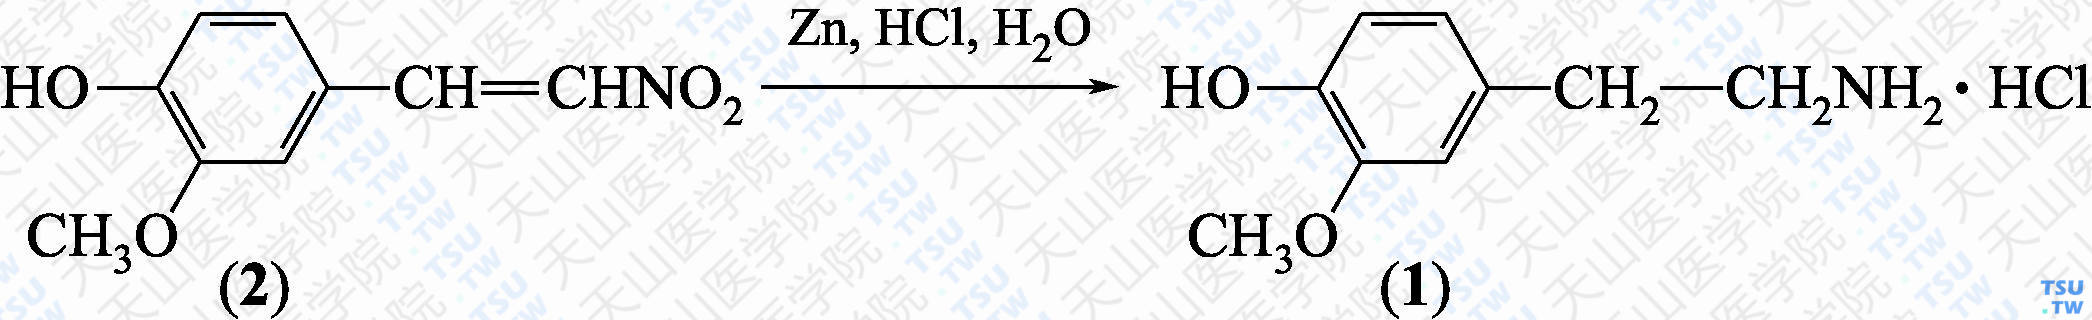 3-甲氧基-4-羟基苯乙胺盐酸盐（分子式：C<sub>9</sub>H<sub>13</sub>NO<sub>2</sub>·HCl）的合成方法路线及其结构式